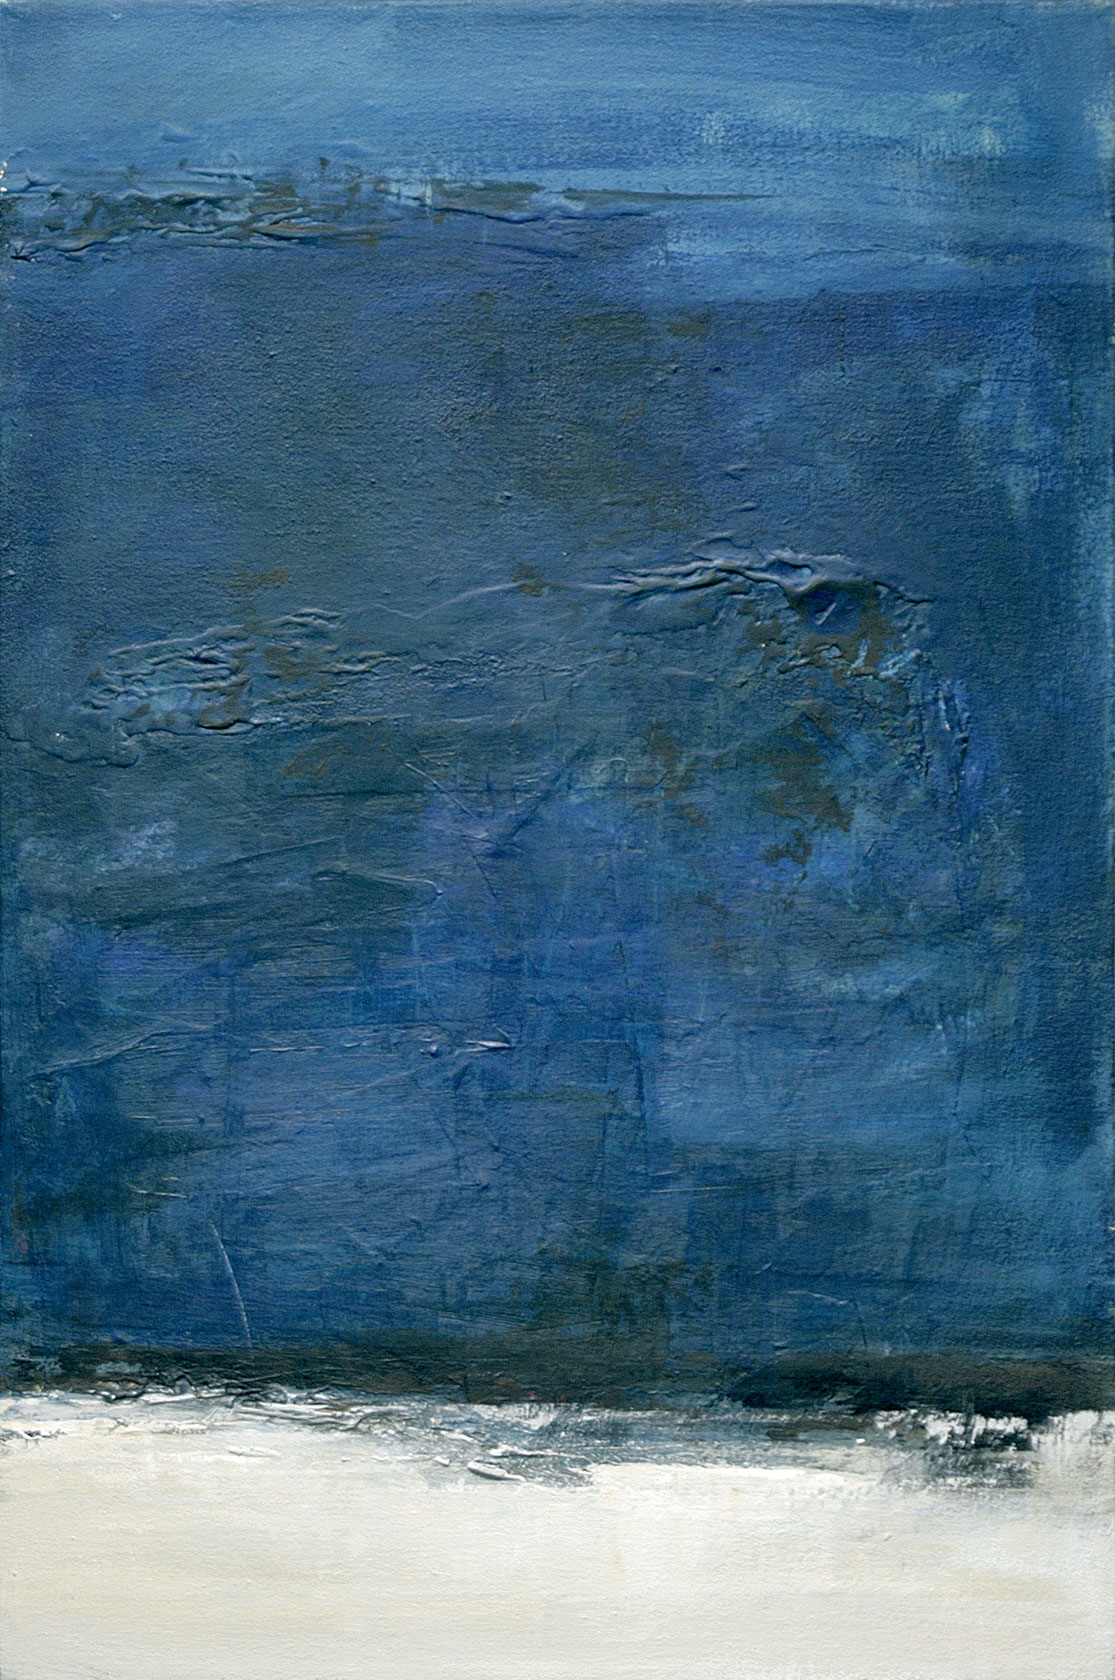 Bleu du ciel, 2005. Éric Laplante. Acrylique sur toile. 91,5 cm x 61 cm. © L'Artothèque